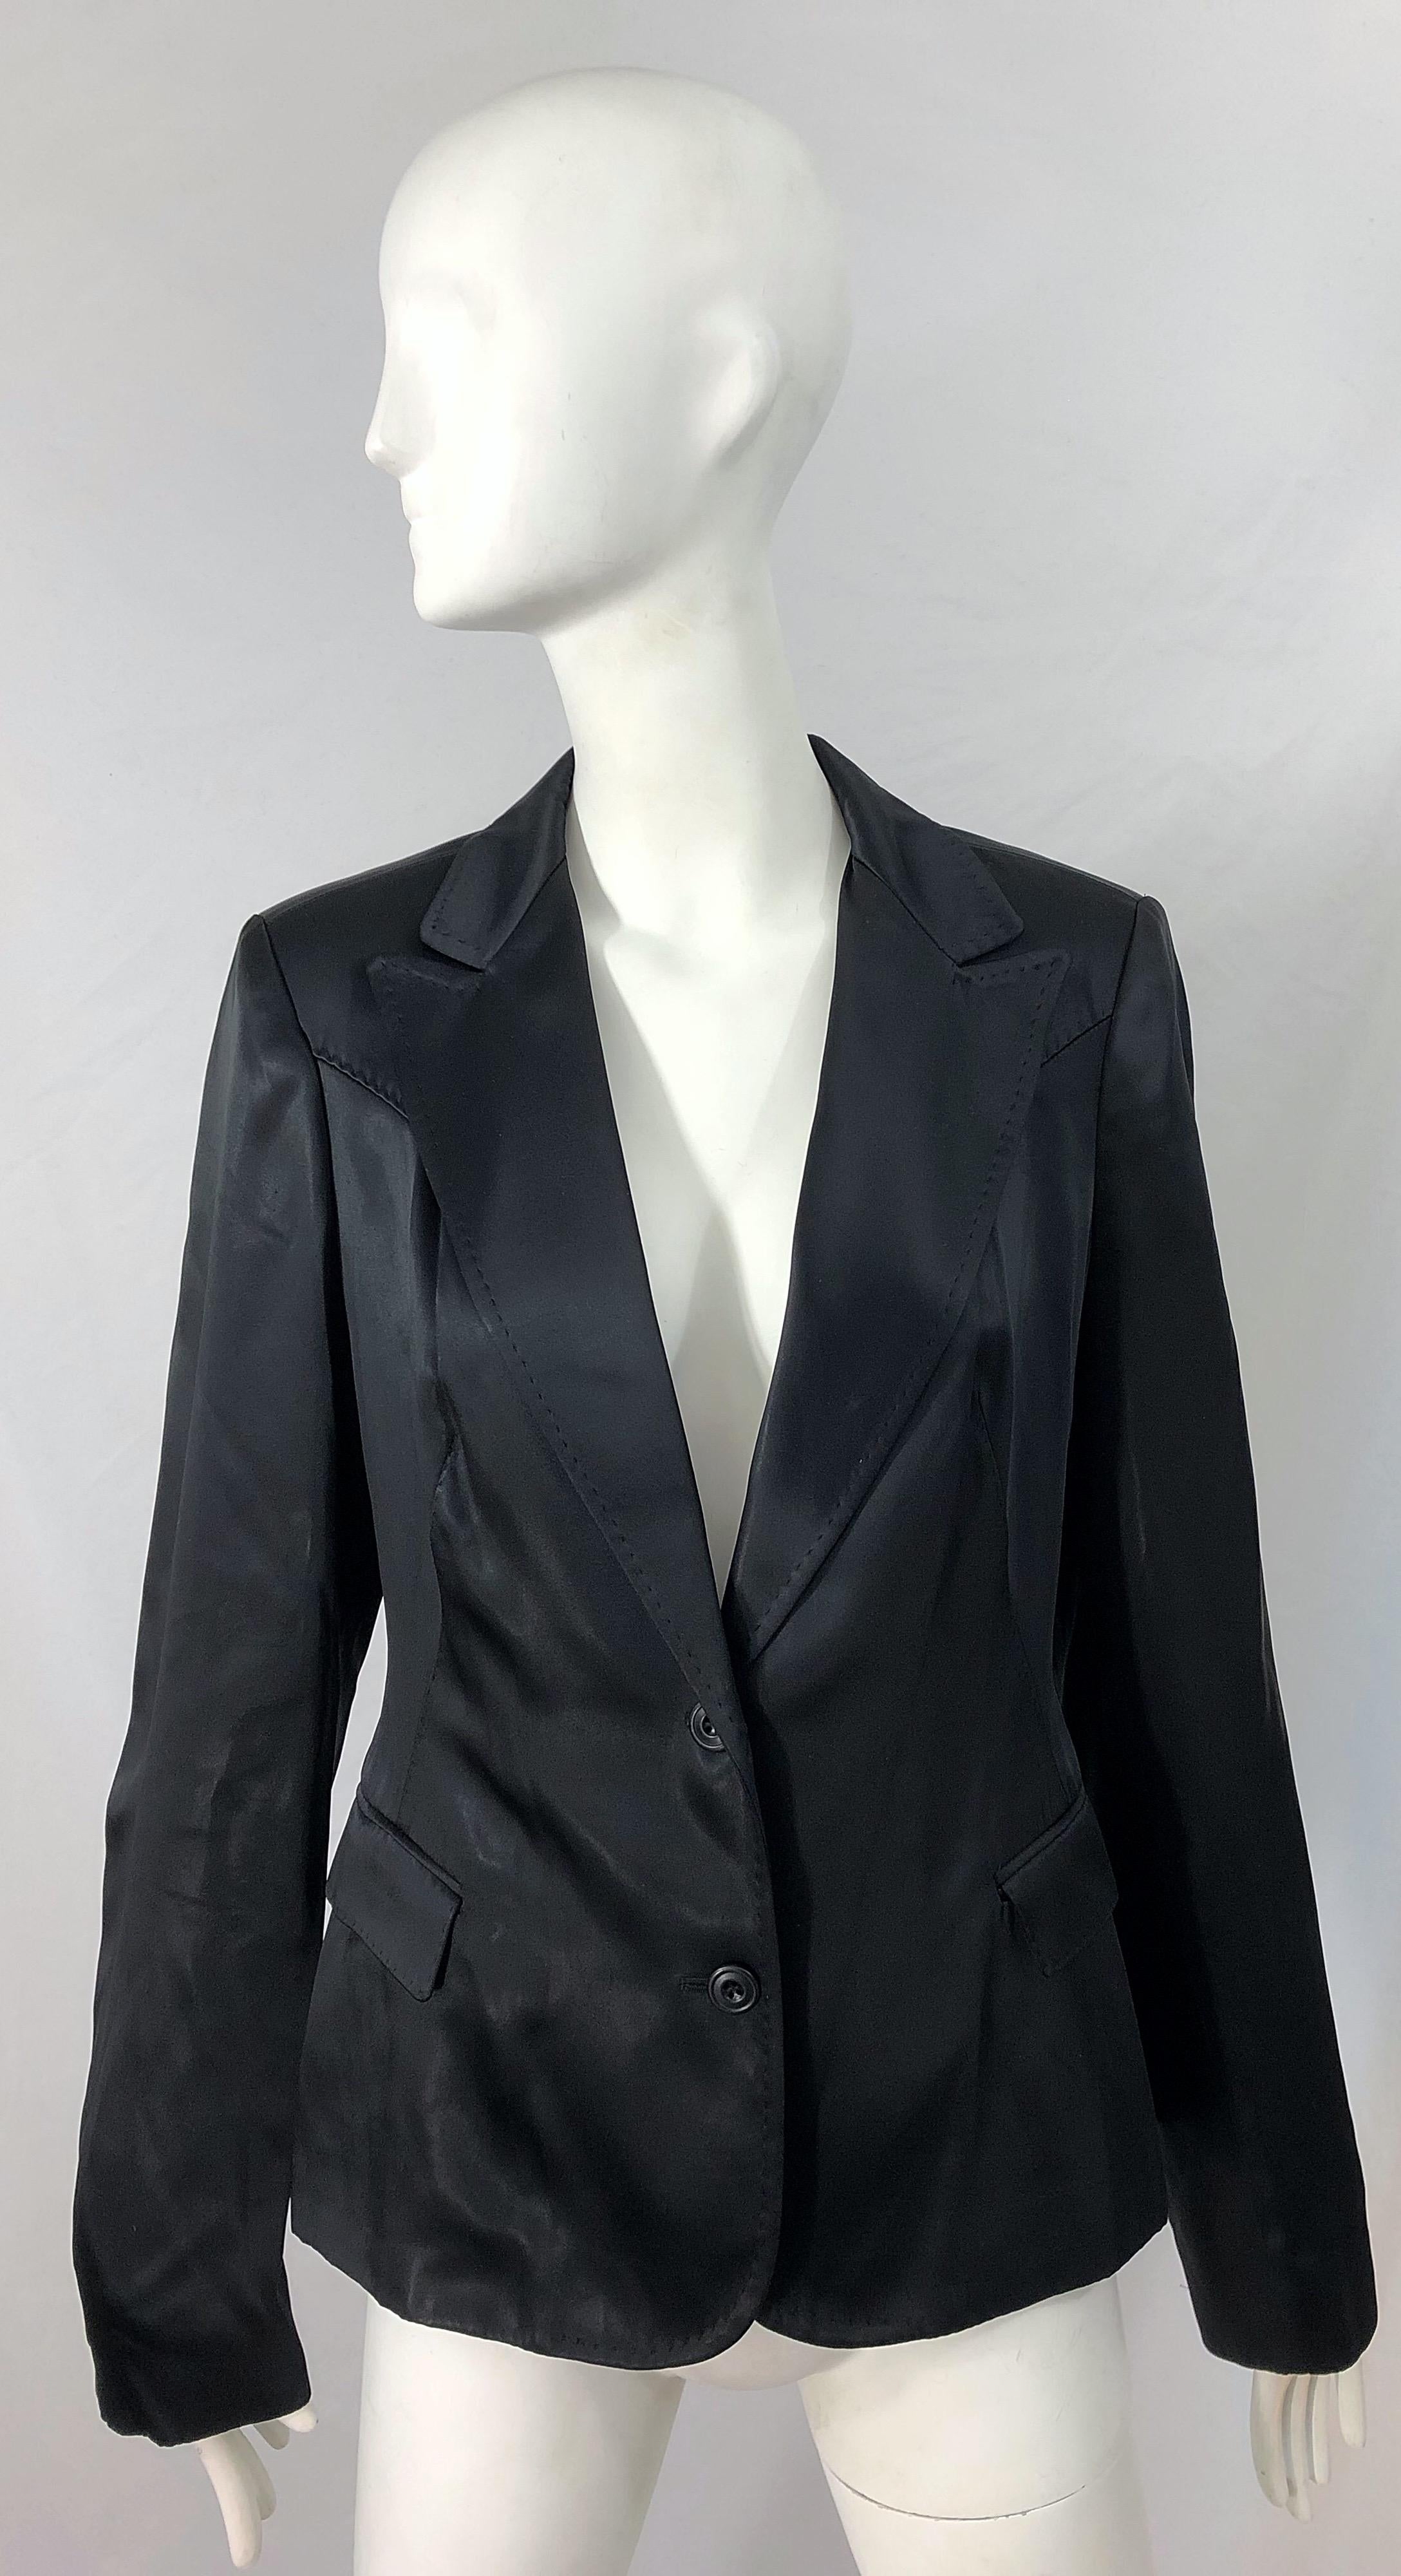 Schicke späte 90er ALESSANDRO DELL'ACQUA schwarze Seiden-Satin-Look Blazer Jacke ! Elegante Passform mit zwei Knöpfen auf der Vorderseite. Taschen an beiden Seiten der Taille. Vollständig gefüttert. Der perfekte schwarze Blazer ist eine zeitlose